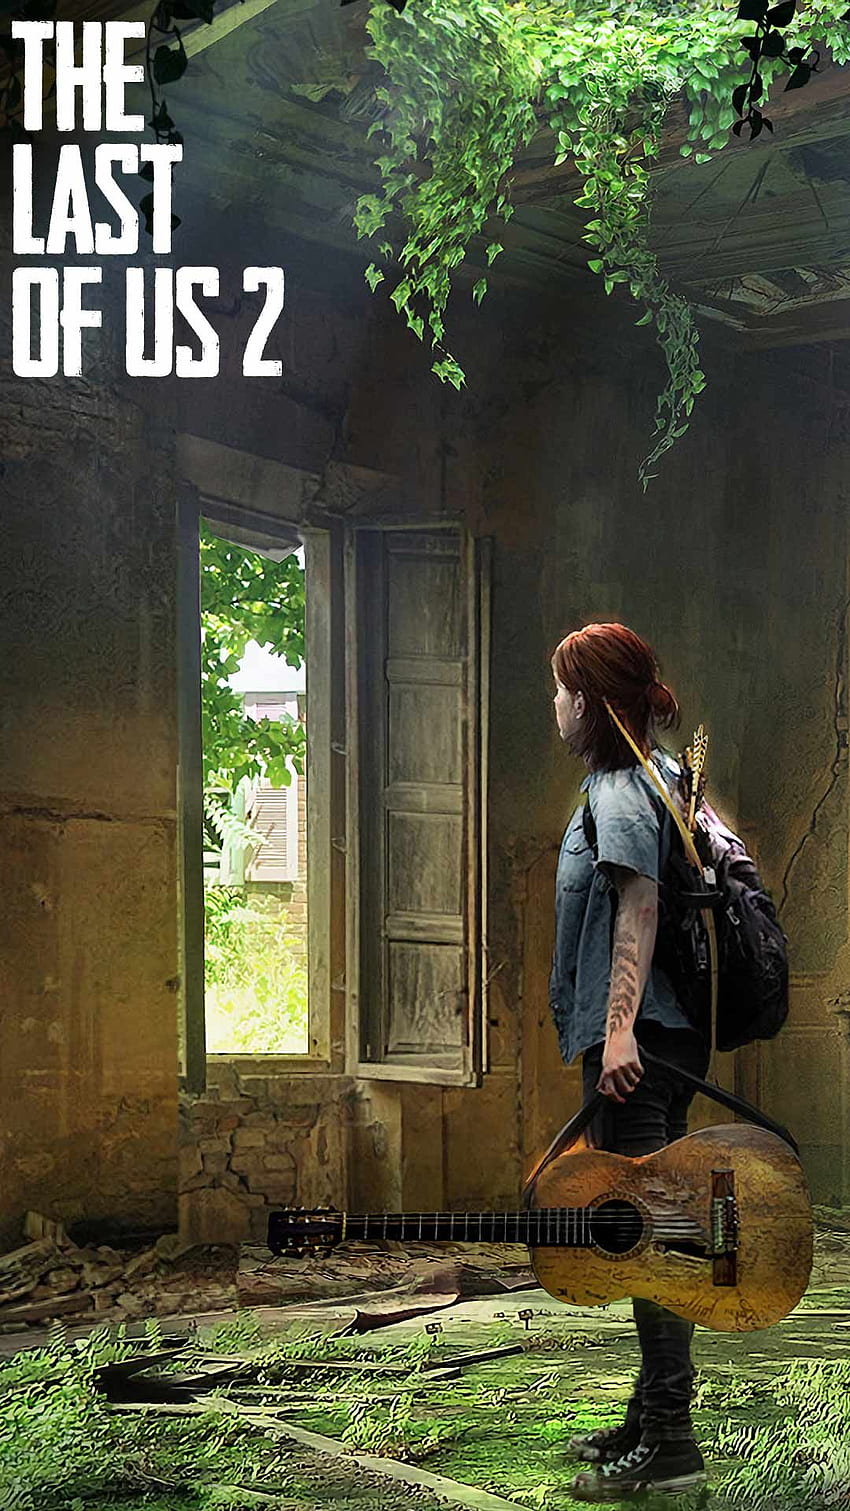 Để hiện lên tình yêu đối với game The Last of Us Part 2, bạn có thể có một hình nền điện thoại đẹp mắt về trò chơi này. Với các hình ảnh độc đáo và sắc nét, bạn sẽ cảm thấy hứng thú để trải nghiệm trò chơi thành công này. Hãy xem các hình ảnh liên quan để có được sự tò mò và mong đợi với game mới nhất của series The Last of Us.